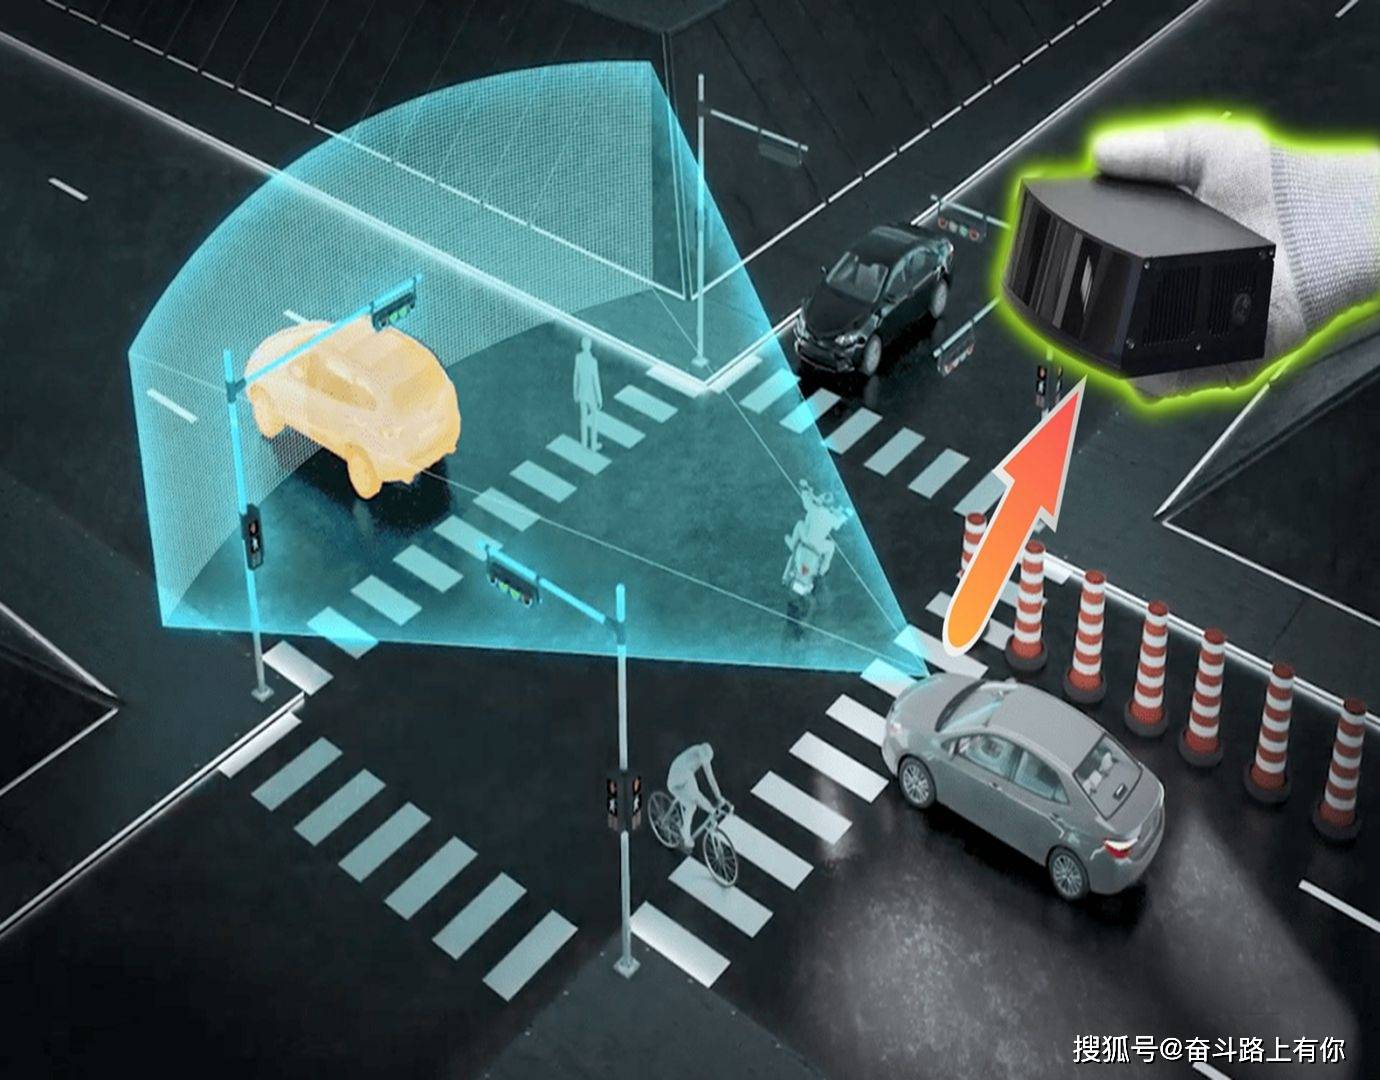 半固态激光雷达是中国规避美国专利实现弯道超车的绝好机会